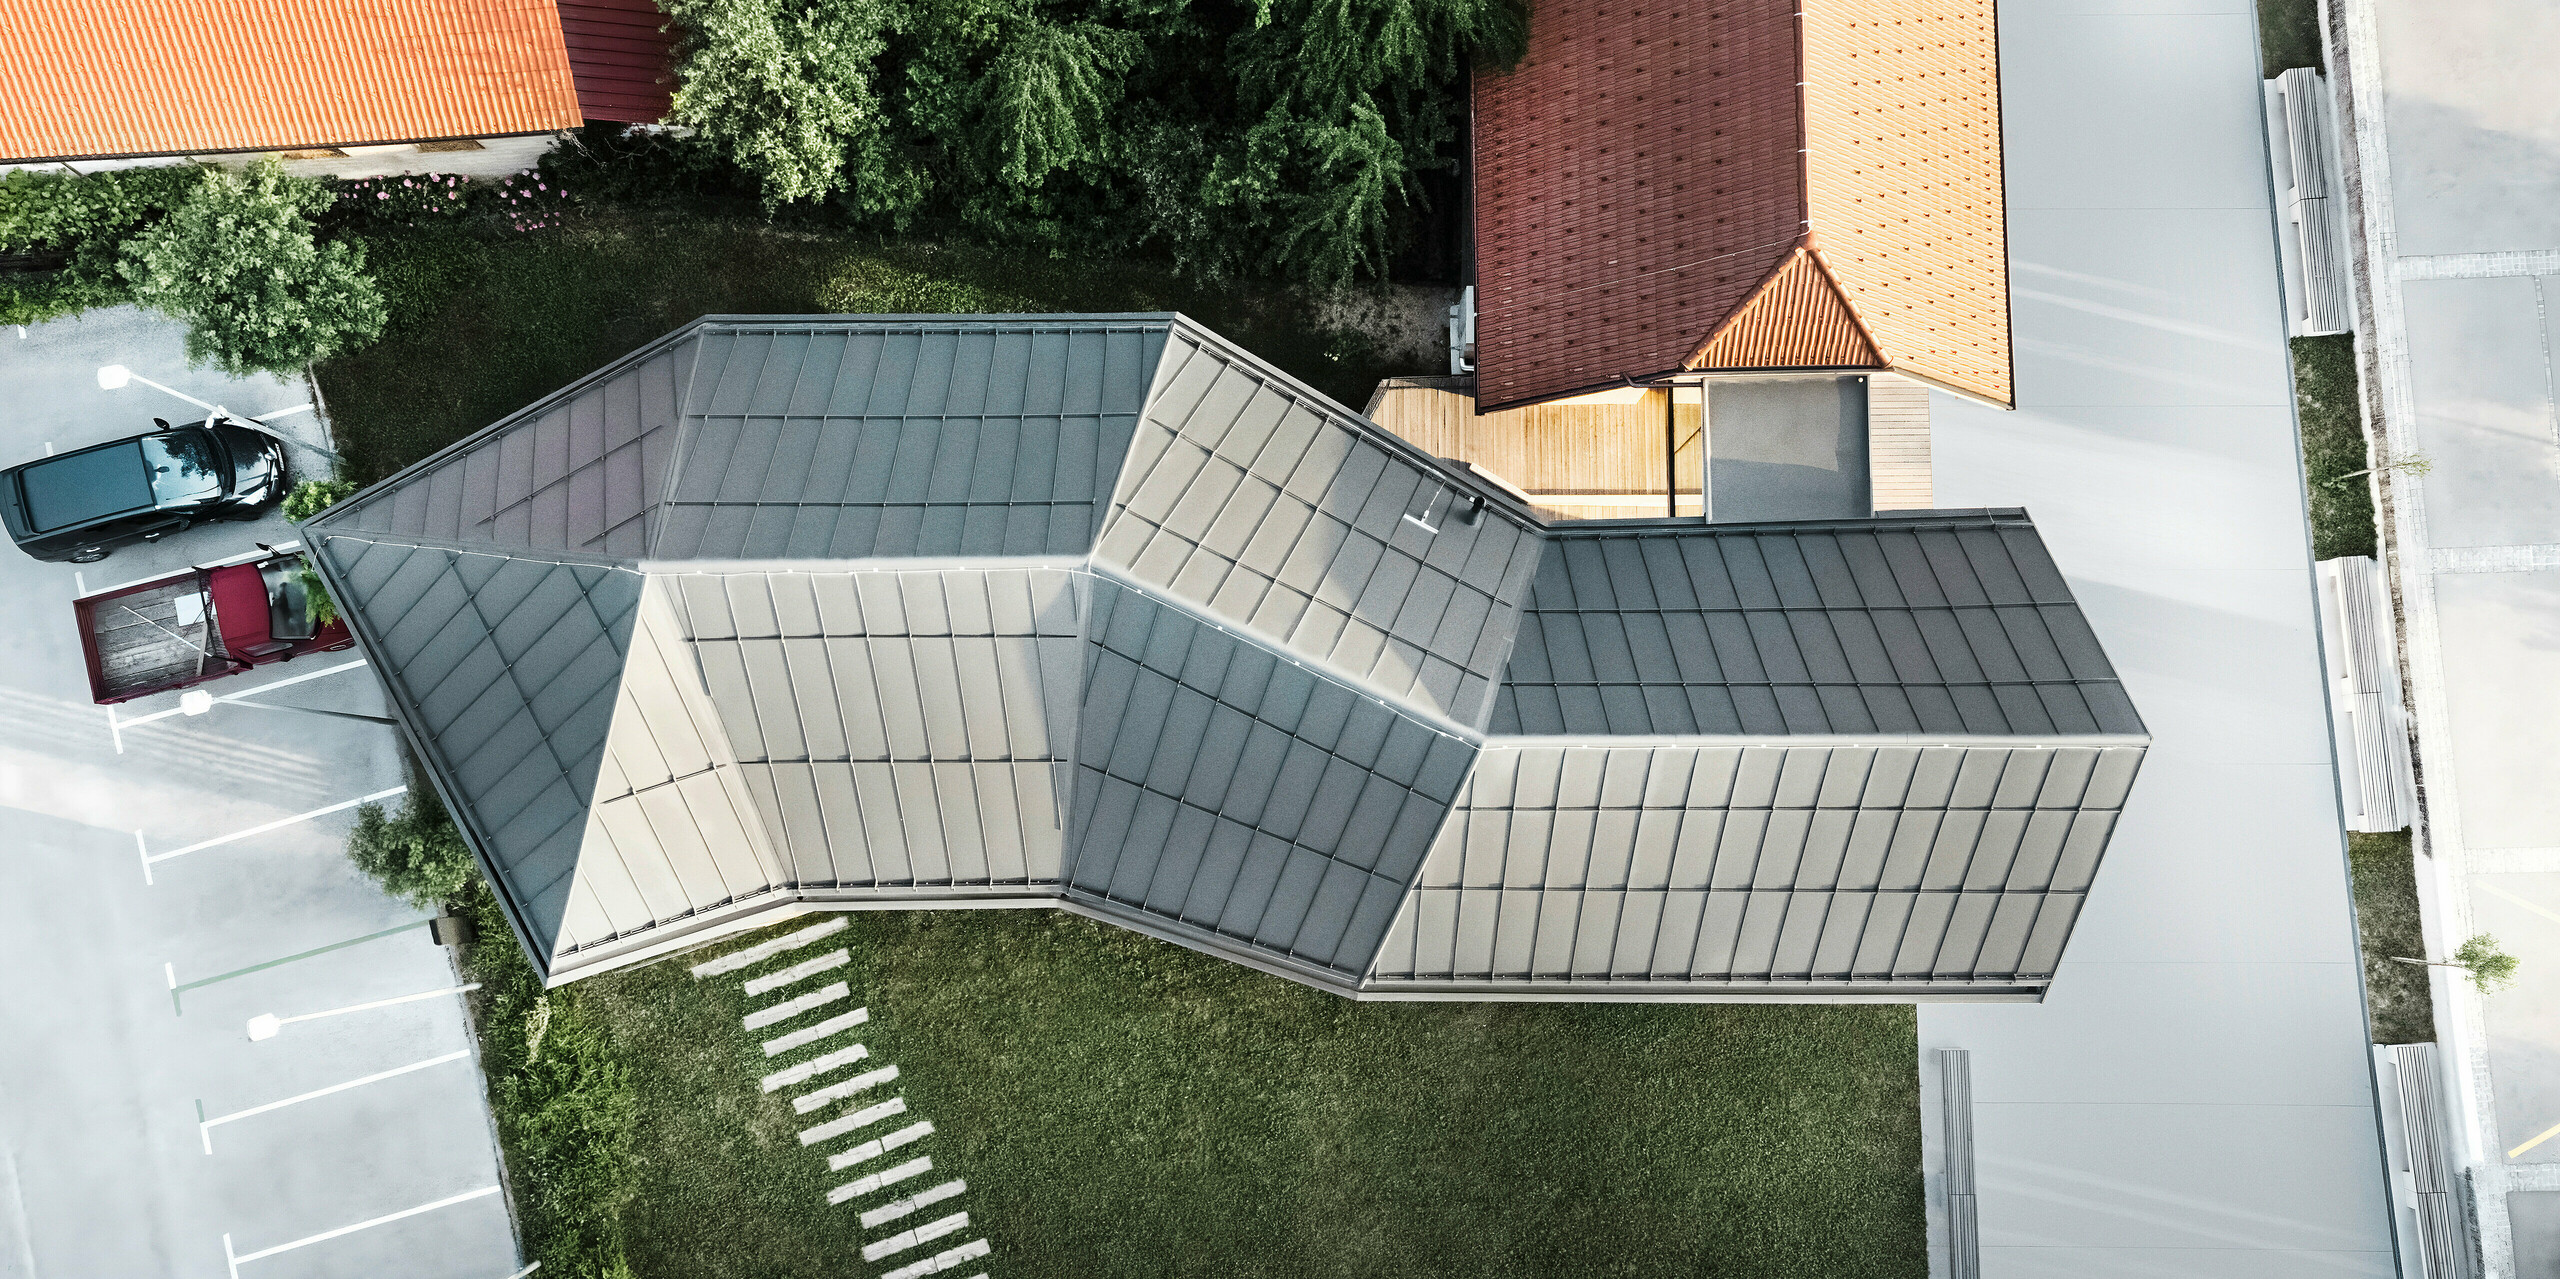 Pohled z ptačí perspektivy na návštěvnické centrum v Ig ve Slovinsku, které zaujme svou složitou geometrickou střechou PREFALZ v P.10 tmavě šedé. Nápadná střešní konstrukce odráží inovativní architekturu a přizpůsobení rozmanitému prostředí s přilehlými tradičními taškovými střechami. Precizní zpracování a moderní design podtrhují odbornost PREFA v moderním designu střech.